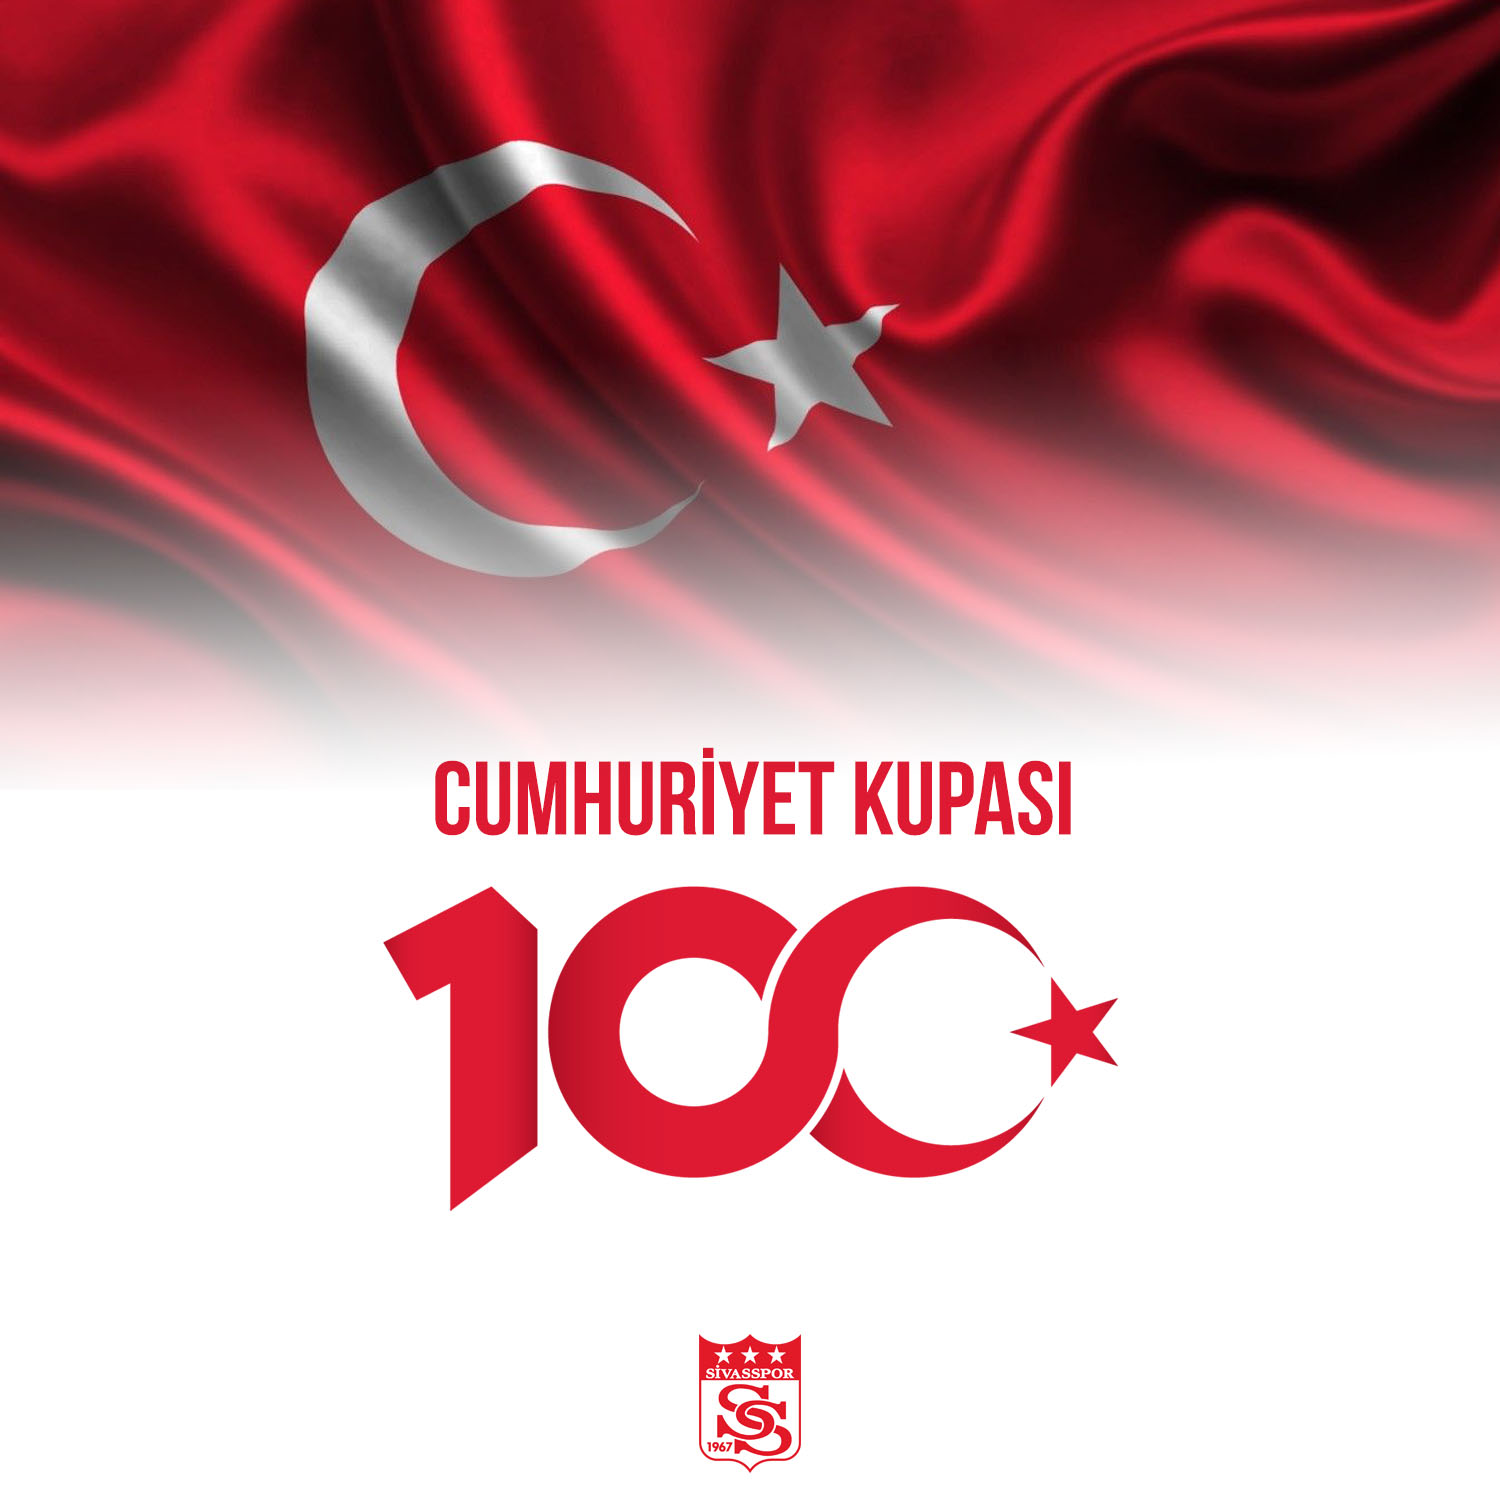 Cumhuriyet Kupası, Bu Sene 100. Yılımıza Özel Organize Edilecek